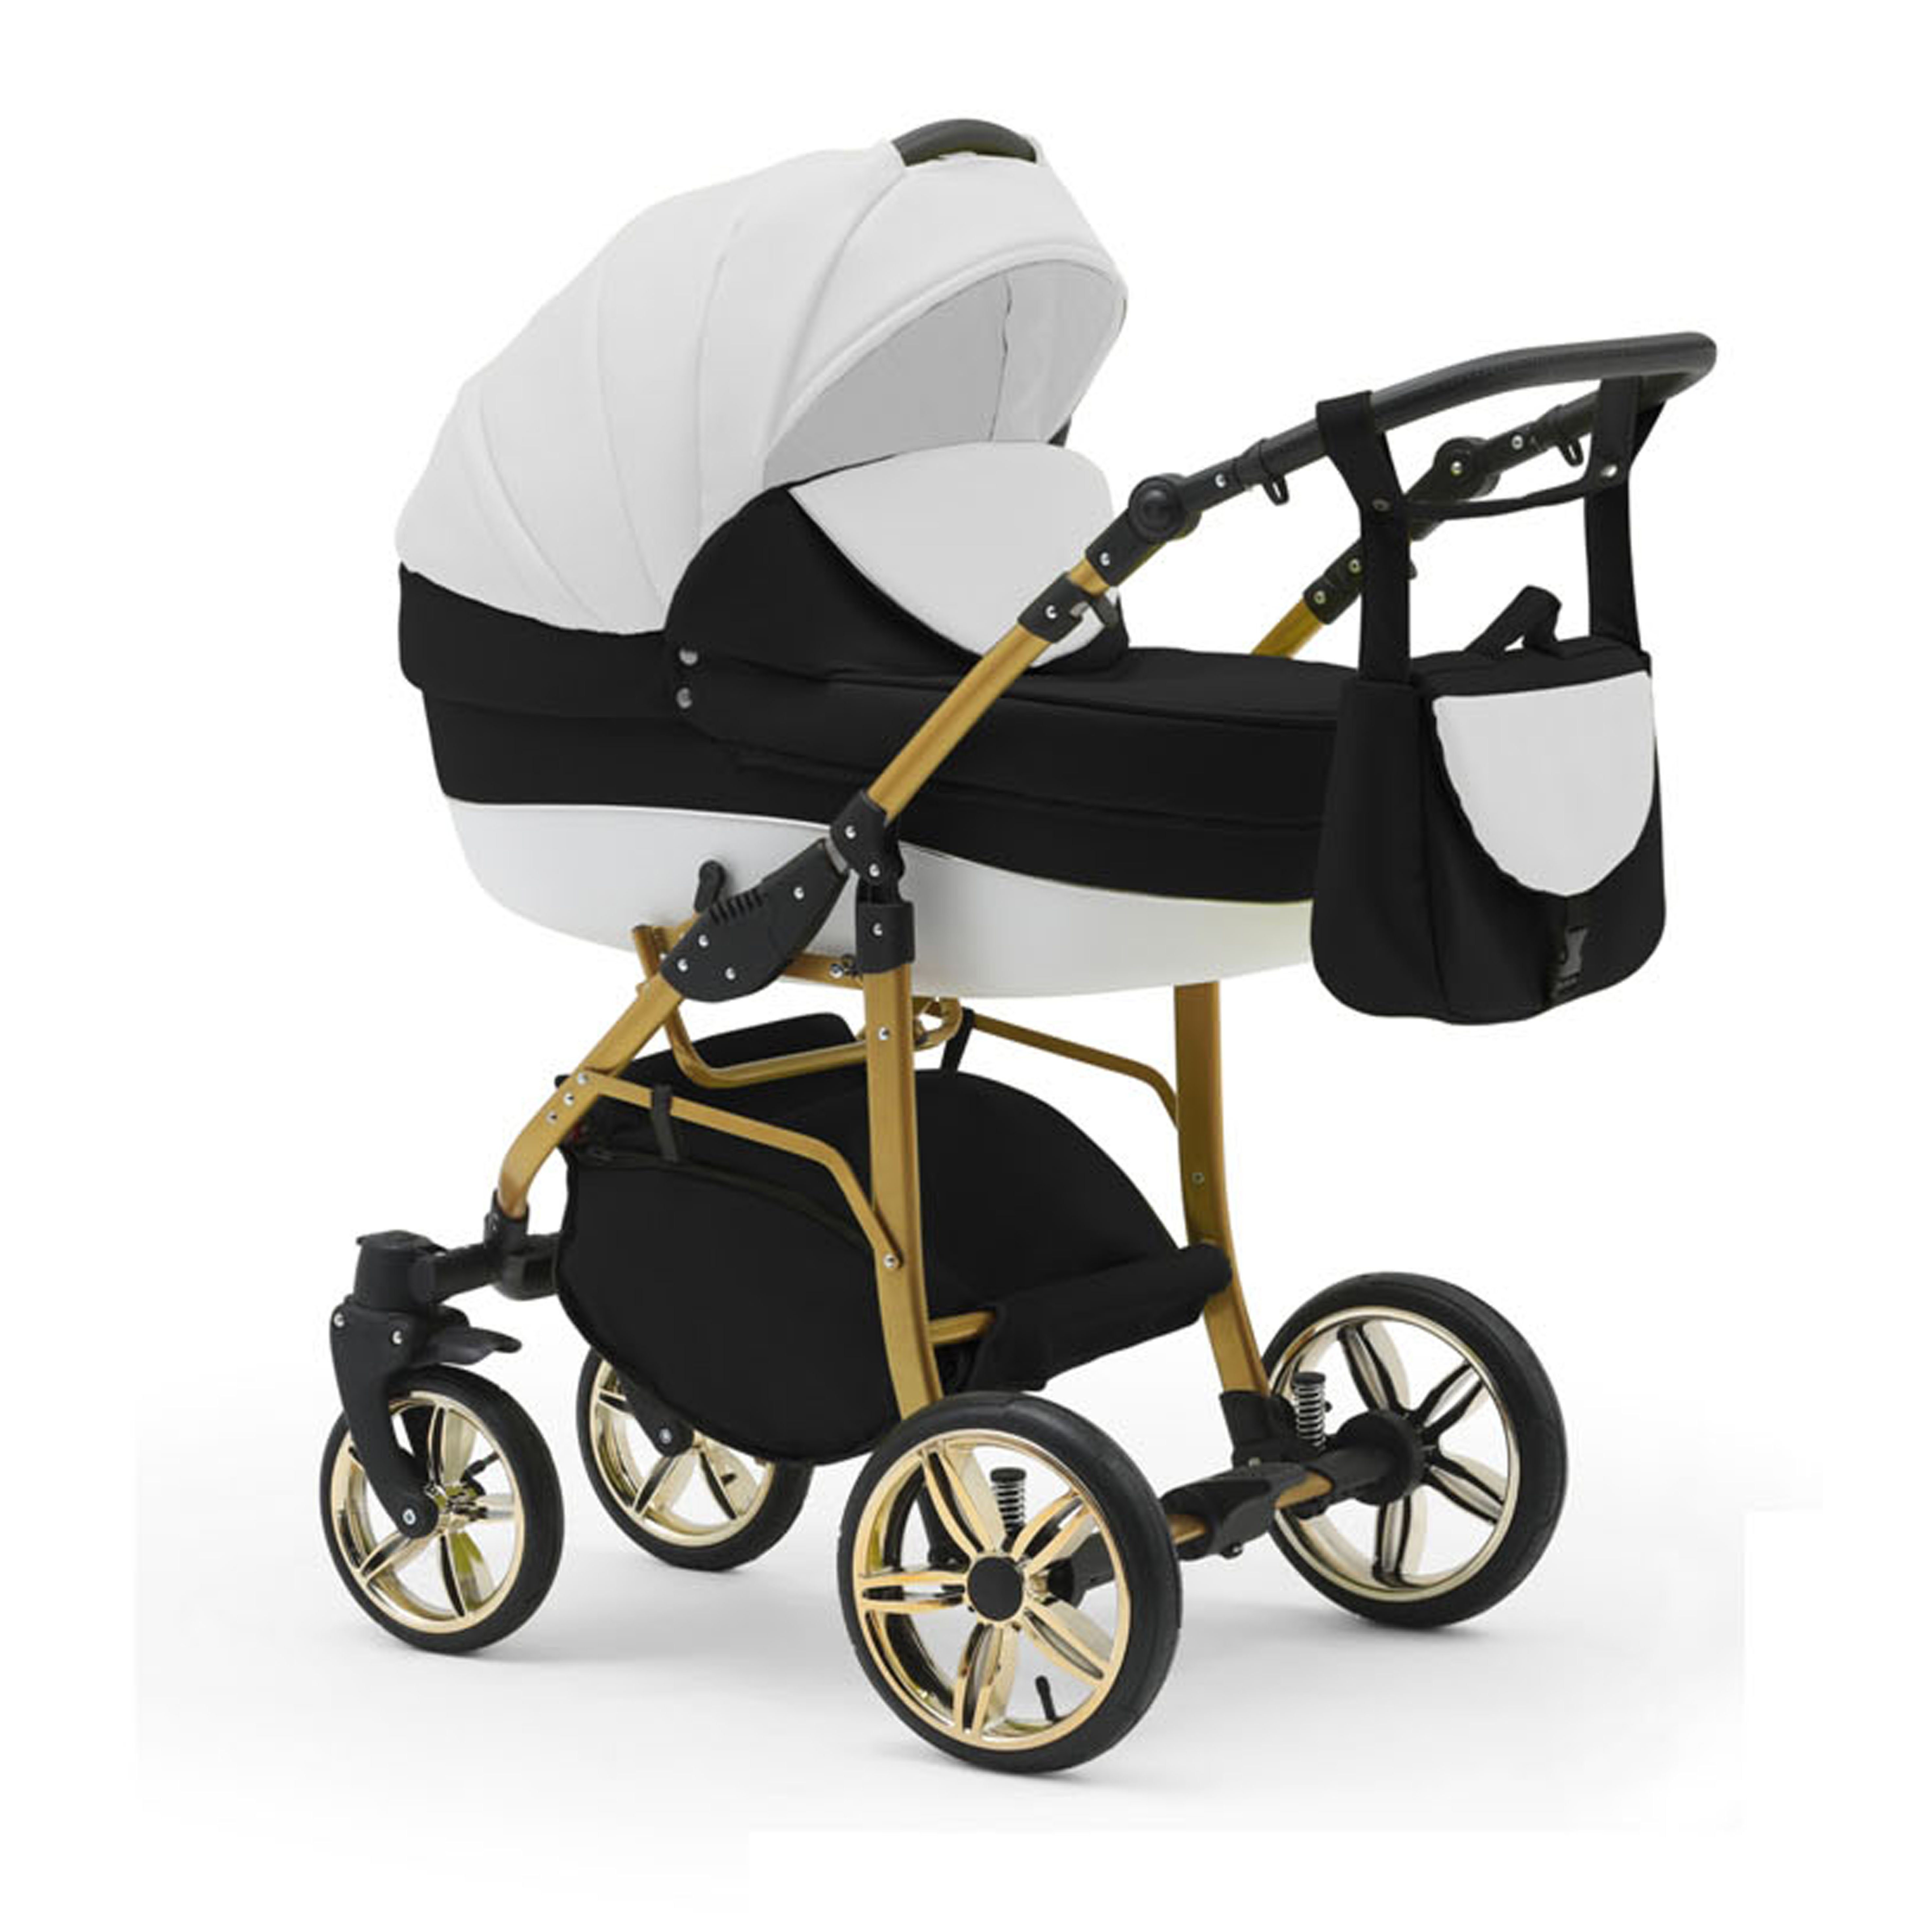 Gold babies-on-wheels in 13 in Weiß-Schwarz-Weiß Kinderwagen-Set Cosmo 46 - 2 Teile Farben Kombi-Kinderwagen - 1